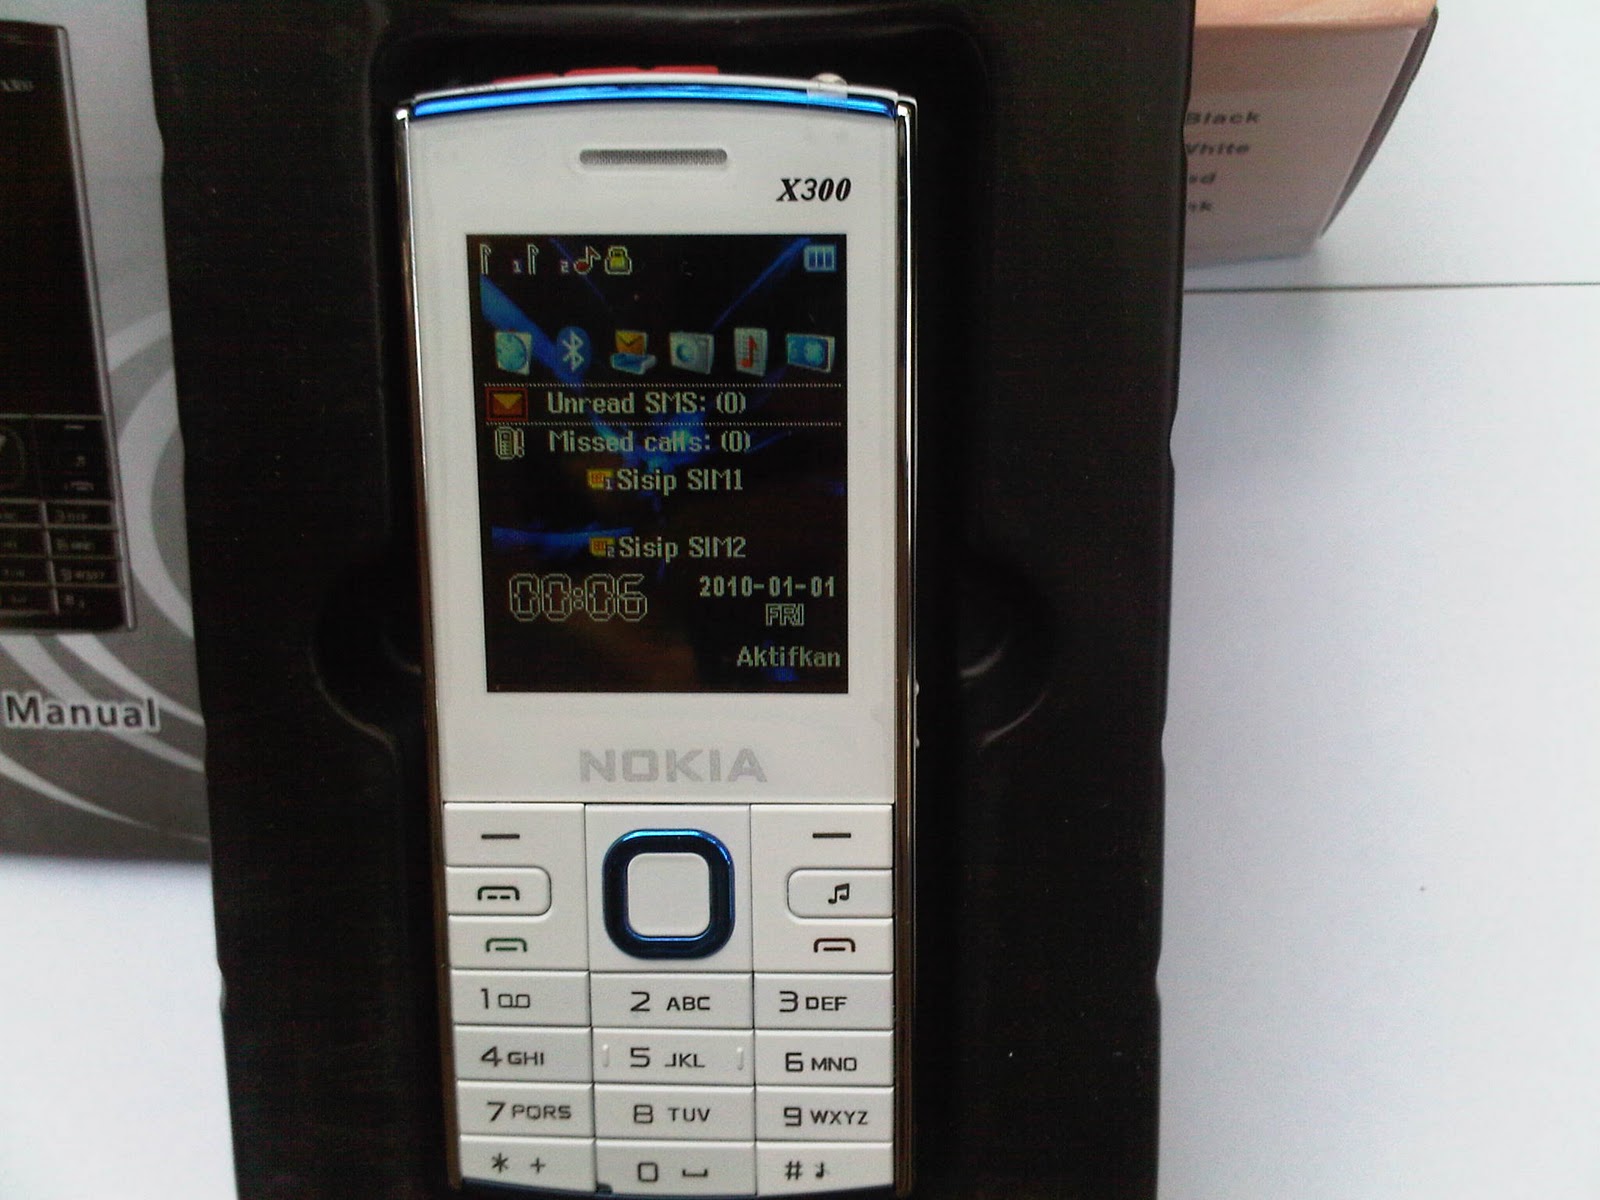 Handphone replika murah: Replika X300 Nokia